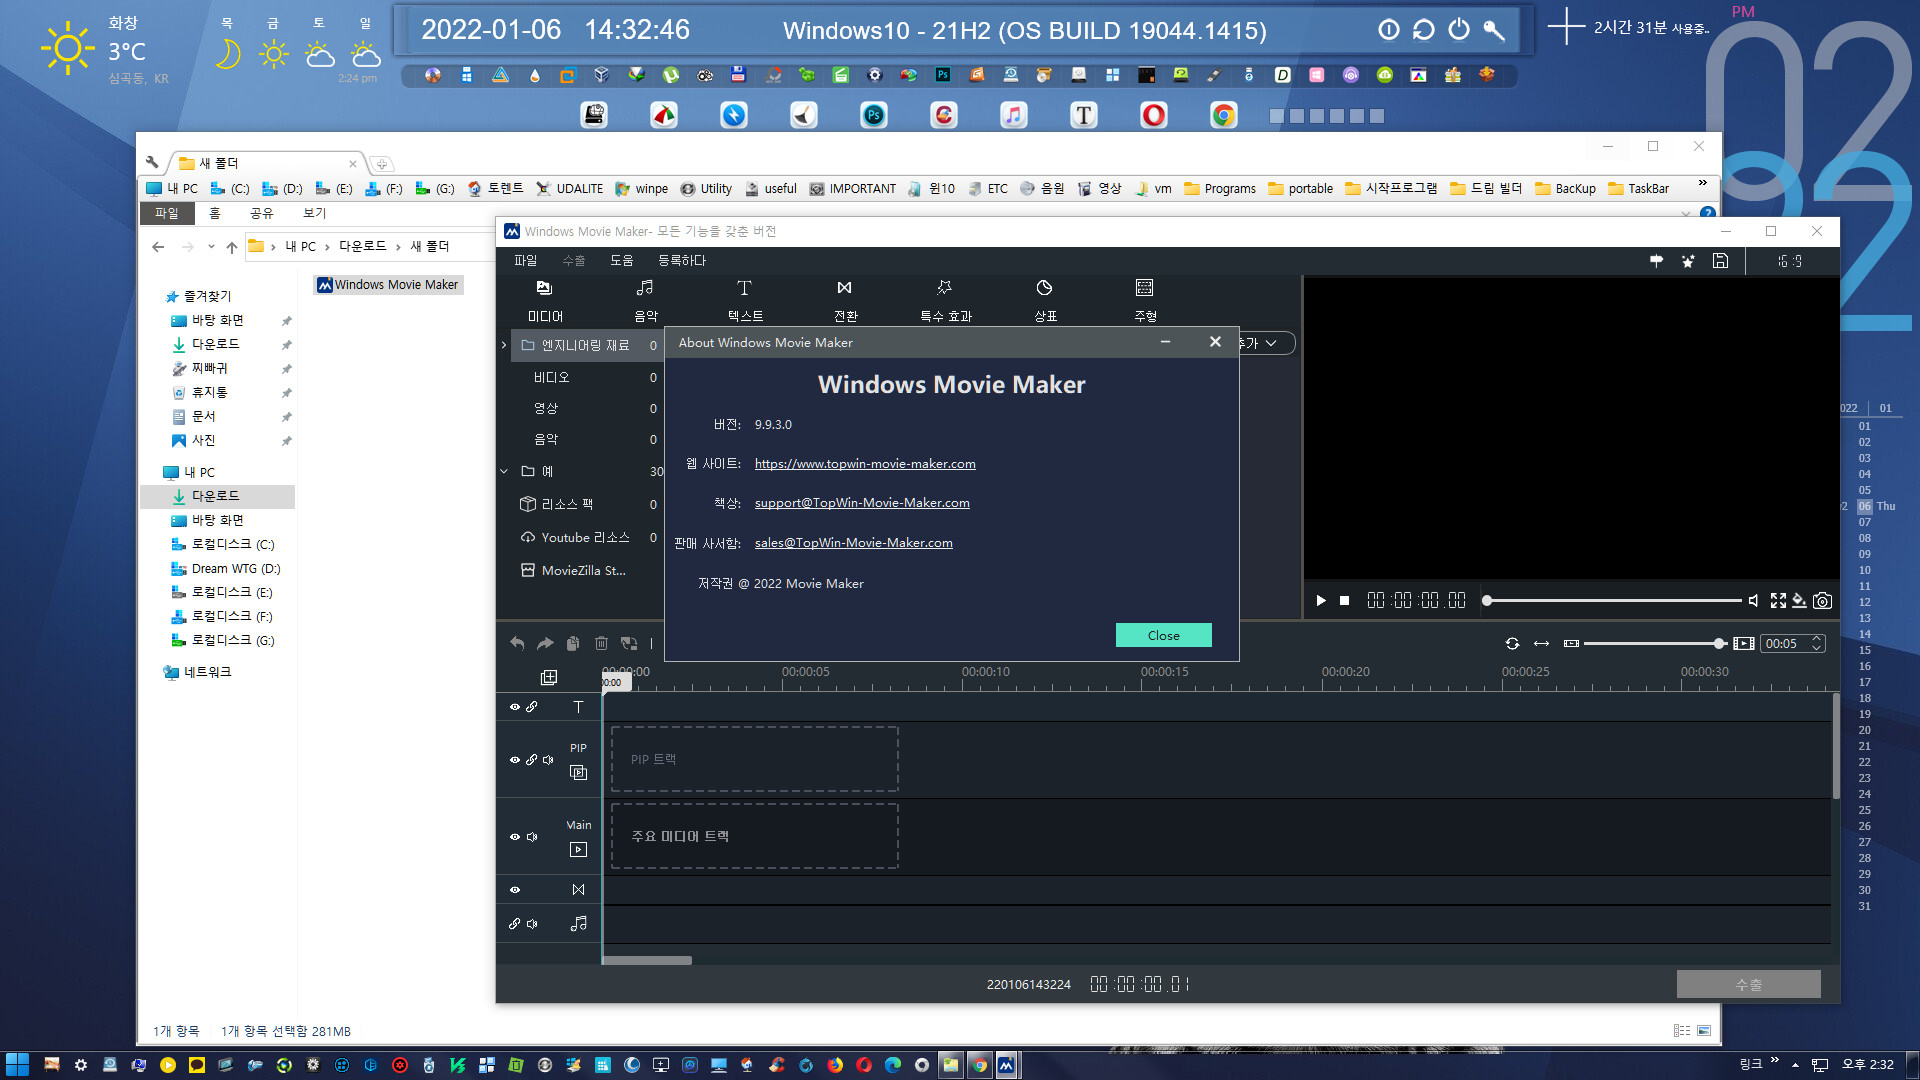 Windows Movie Maker 2022 v9.9.9.9 for apple download